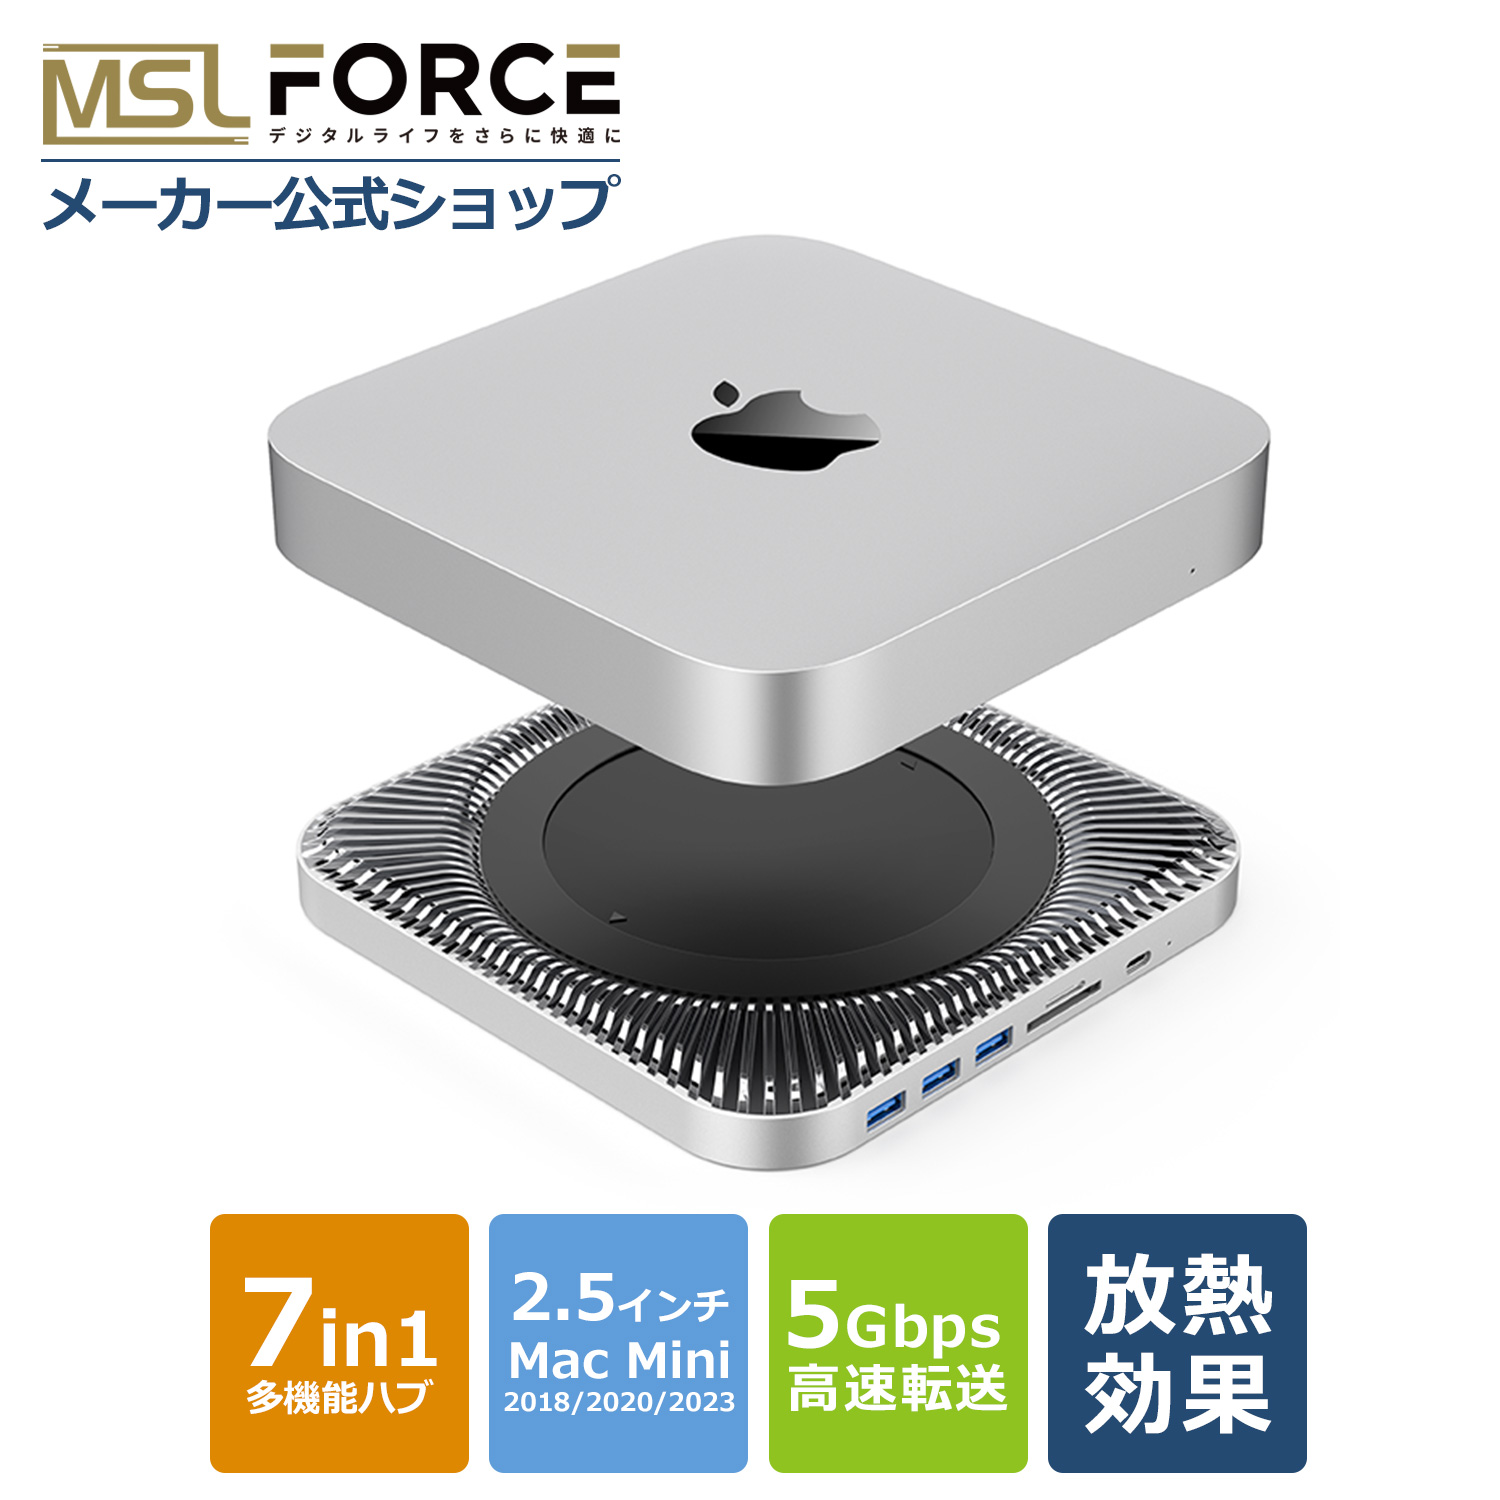 本日最大600円引き Mac Mini用ハブ 7in1 放熱設計 Mac mini用スタンド 